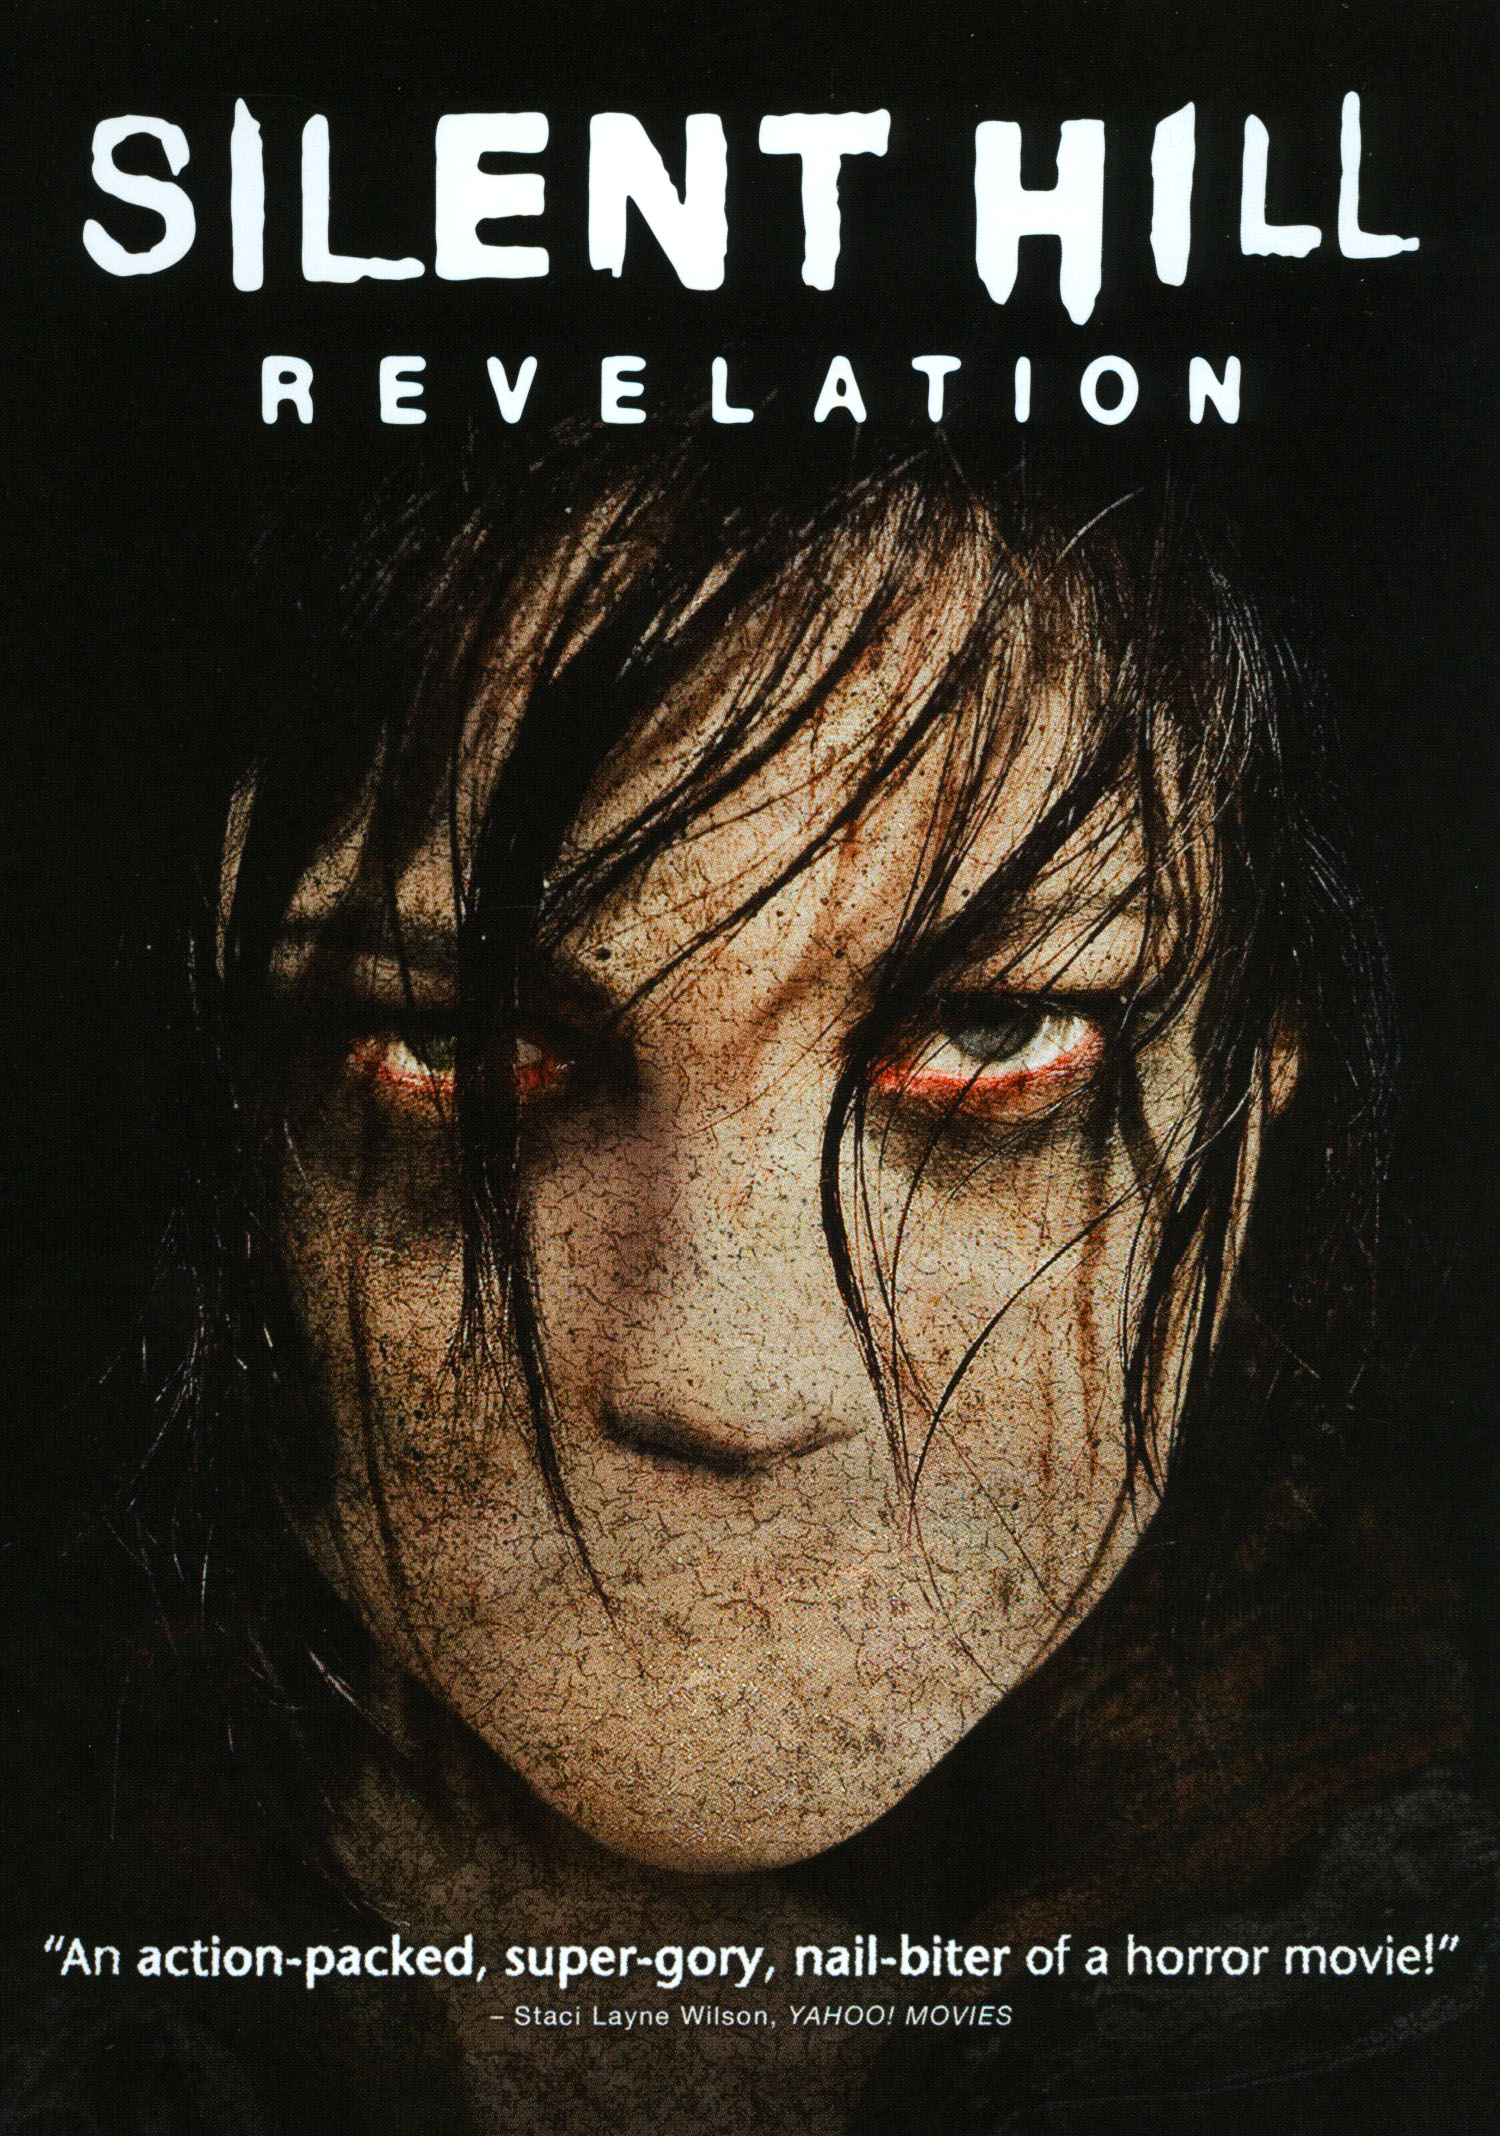 Silent Hill: Revelation [DVD] [2012] - Best Buy